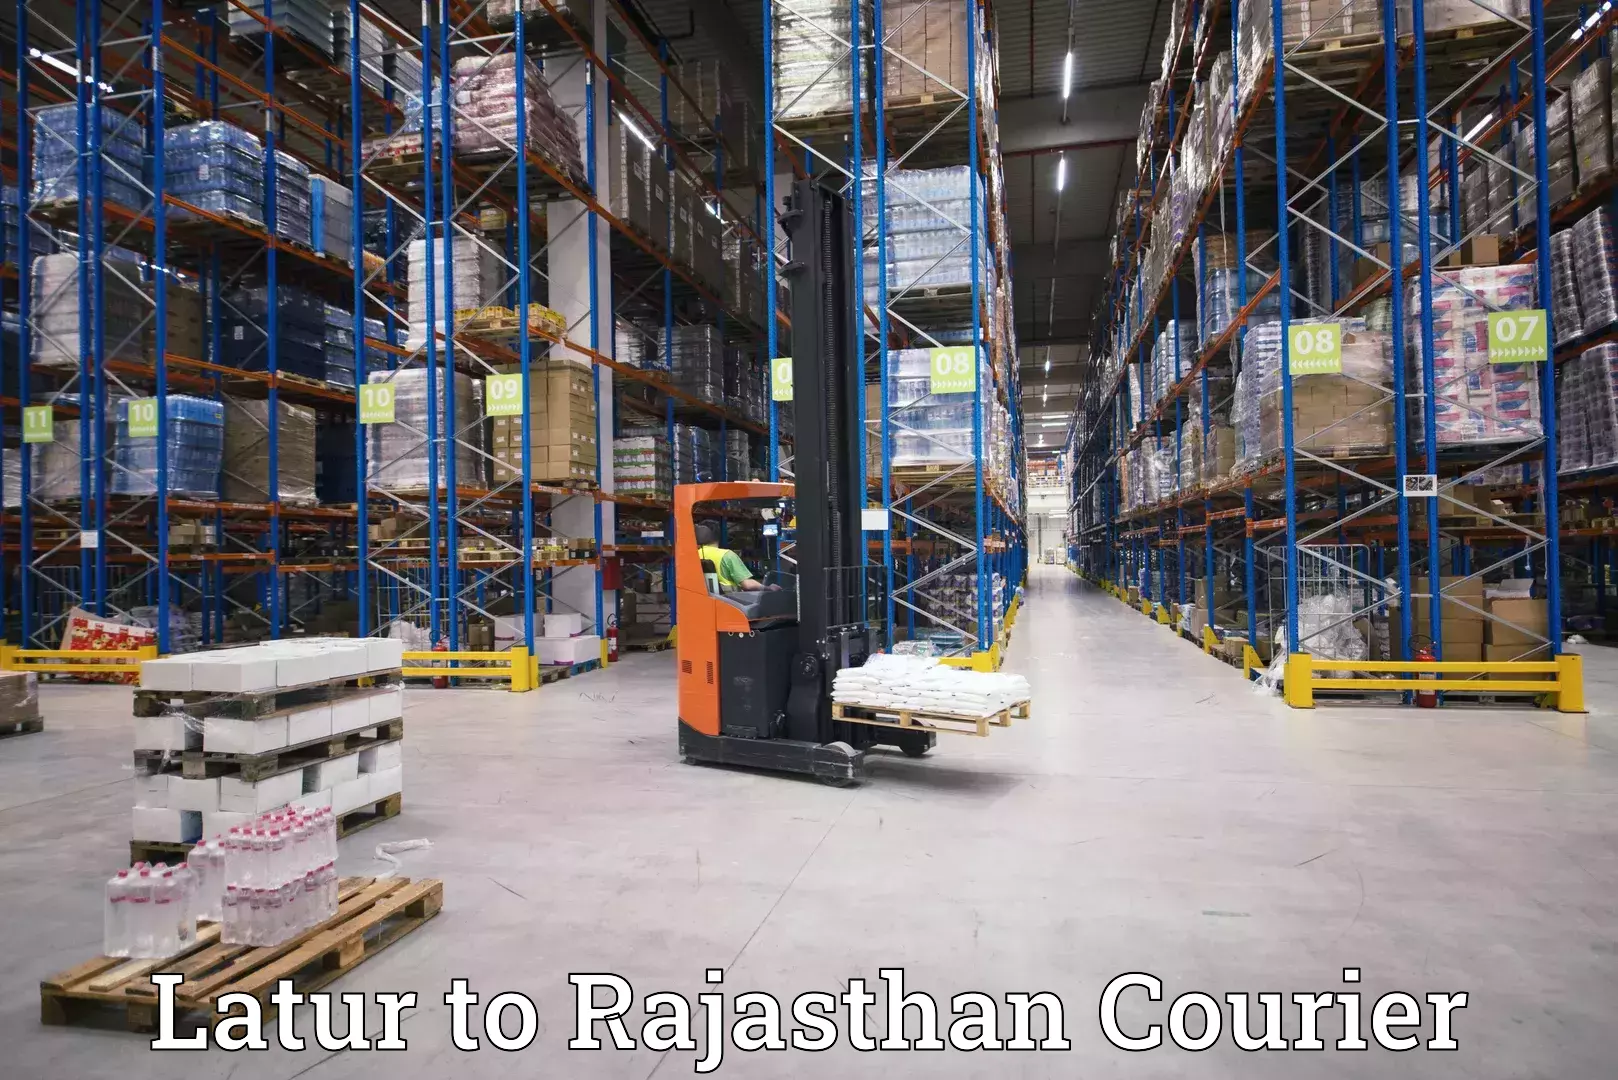 Customer-centric shipping Latur to Deenwa